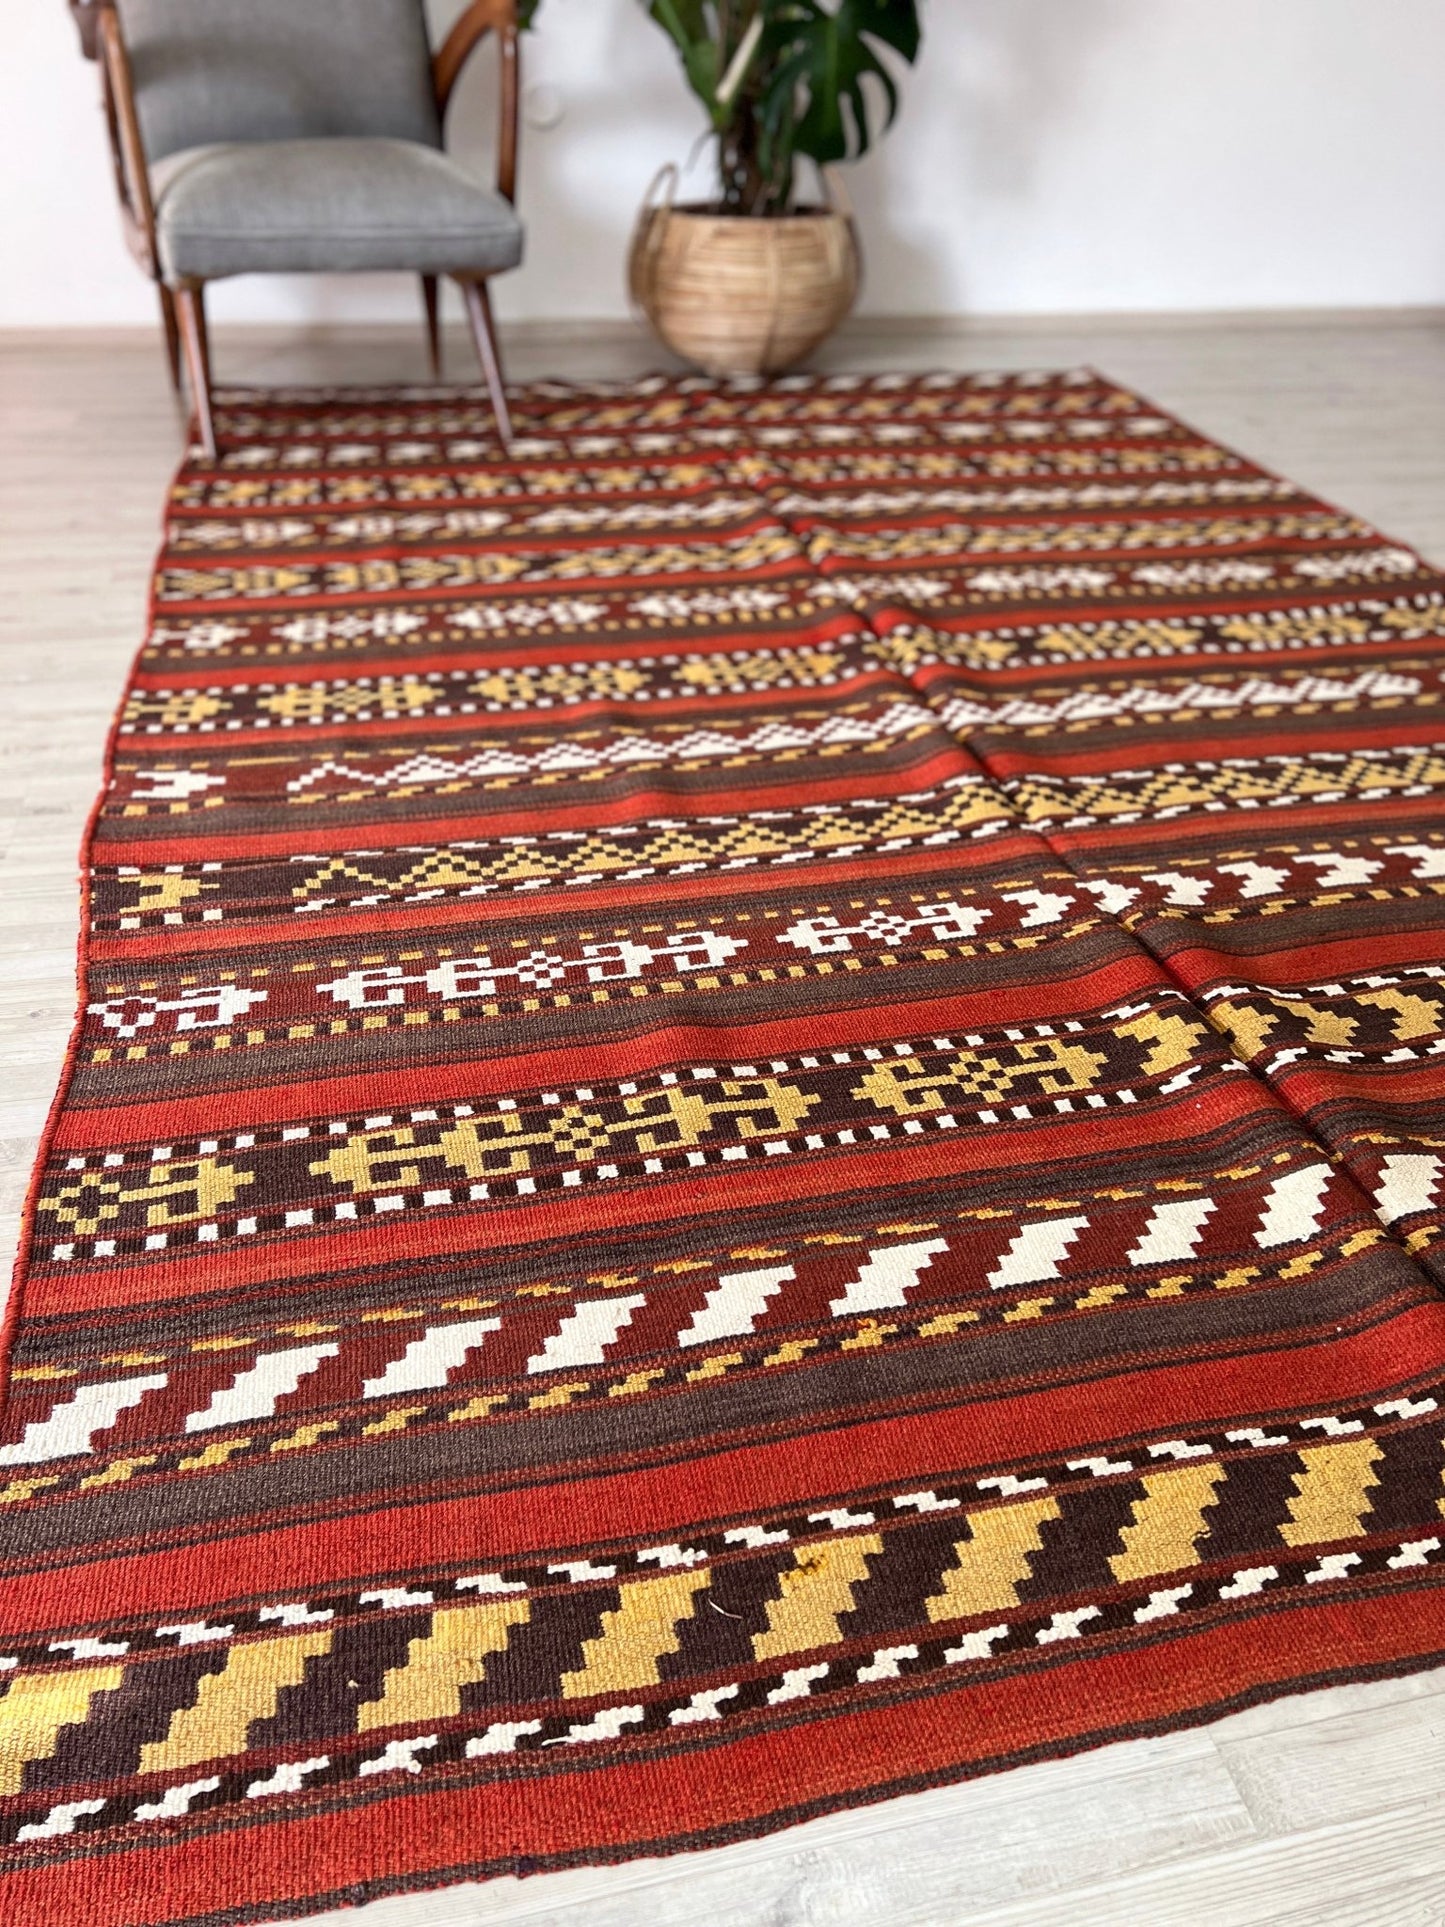 uzbek rug shop san francisco bay area oriental rug palo alro rug shop berkeley buy rug online california toronto canada